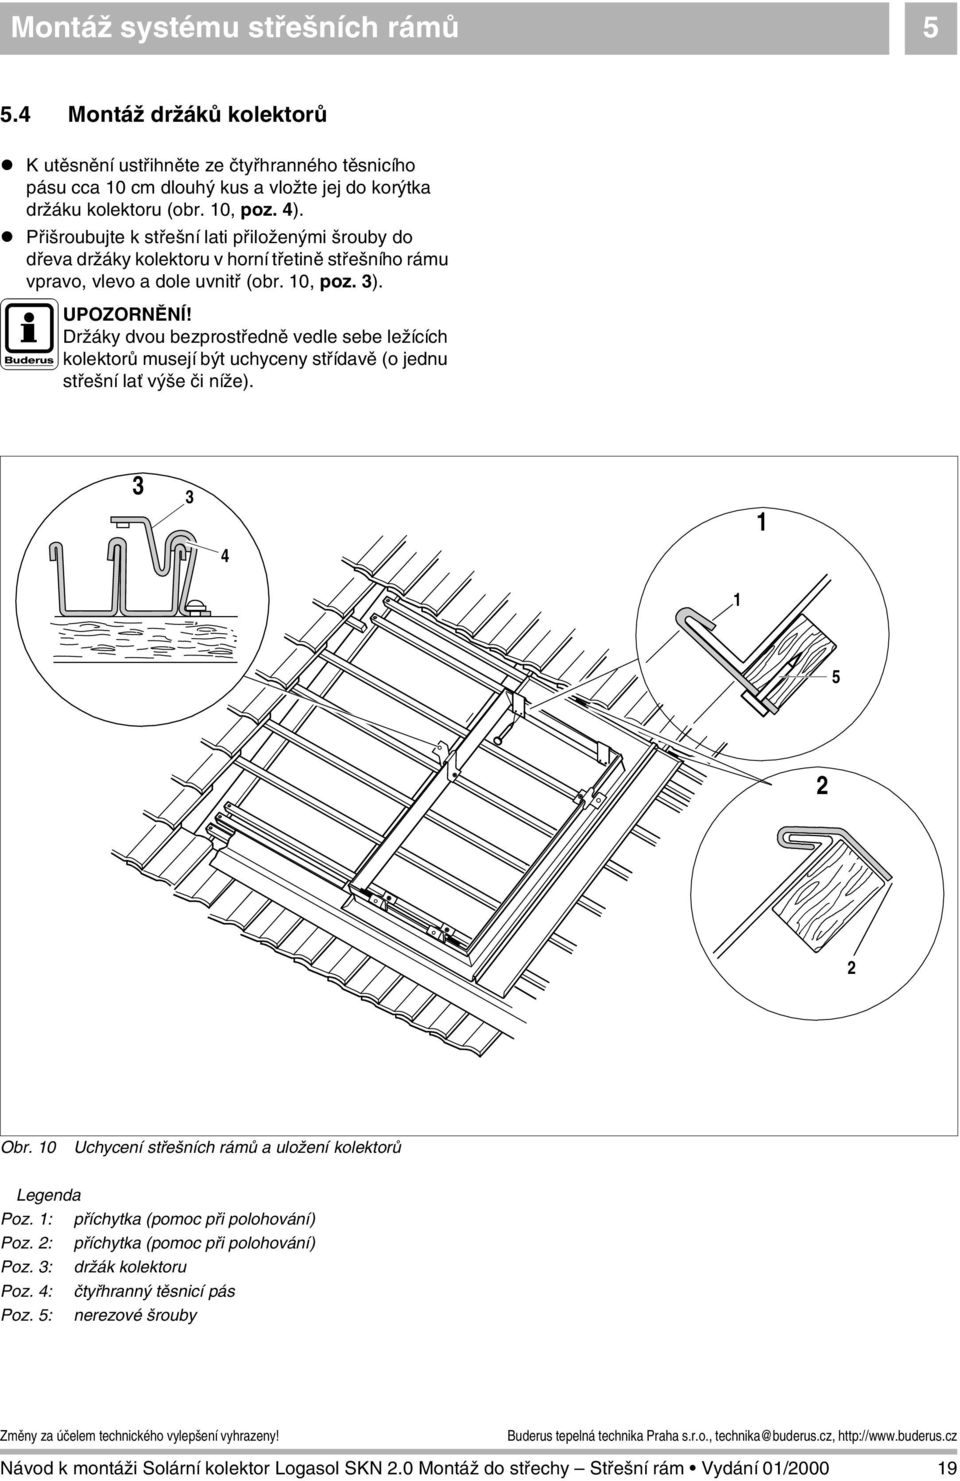 ! Přišroubujte k střešní lati přiloženými šrouby do dřeva držáky kolektoru v horní třetině střešního rámu vpravo, vlevo a dole uvnitř (obr. 10, poz. 3). JUPOZORNĚNÍ!